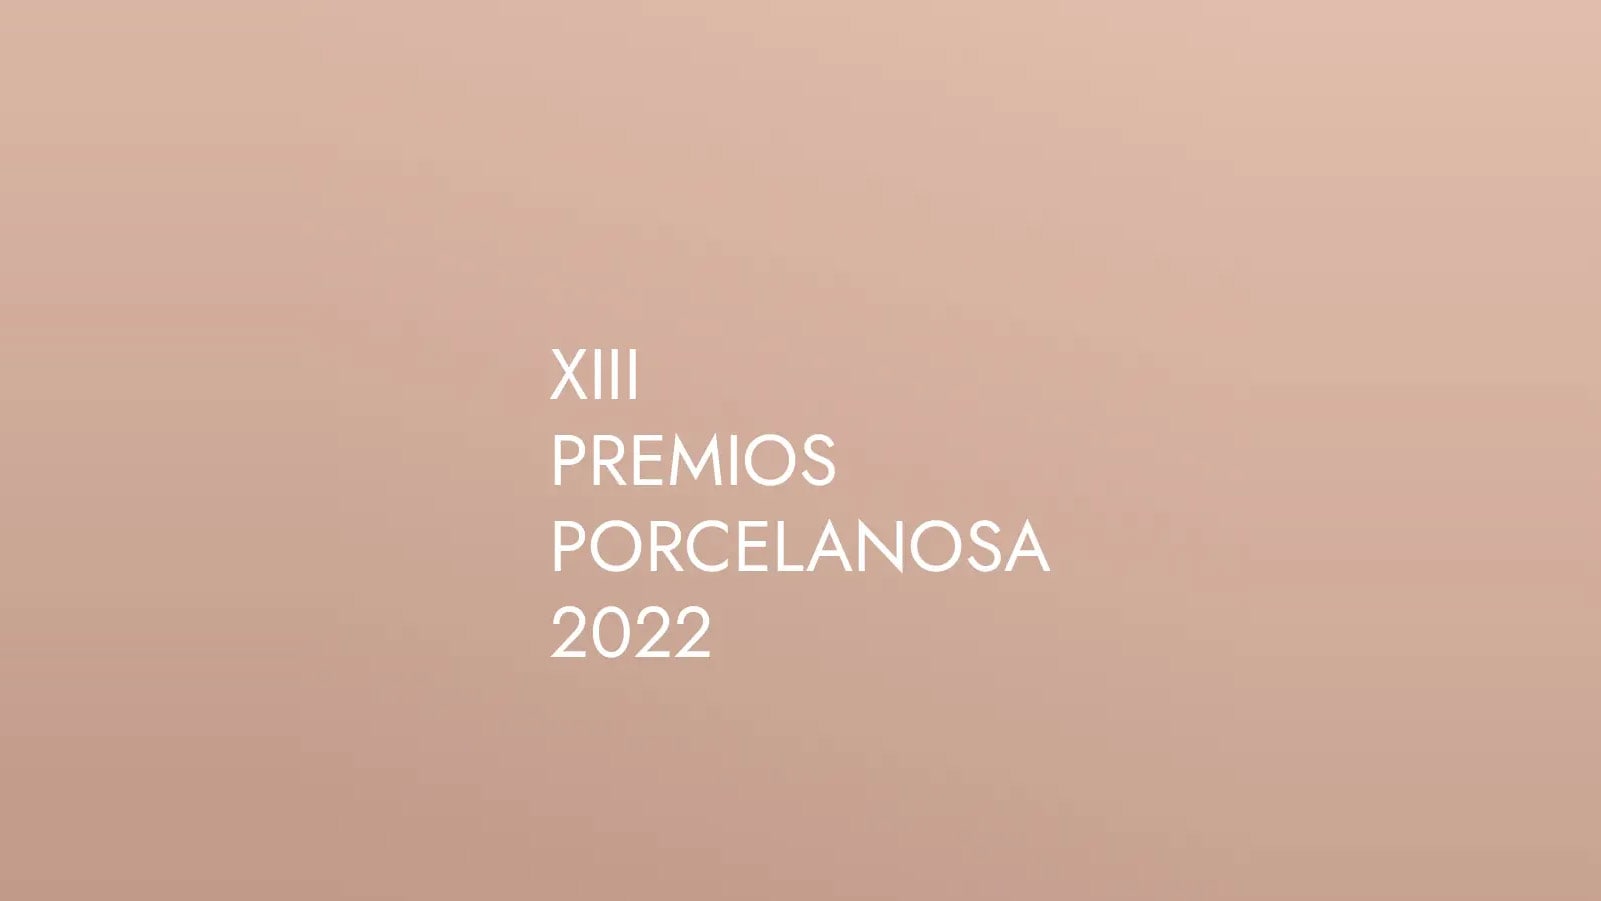 XIII Конкурс Porcelanosa возвращается с новыми силами